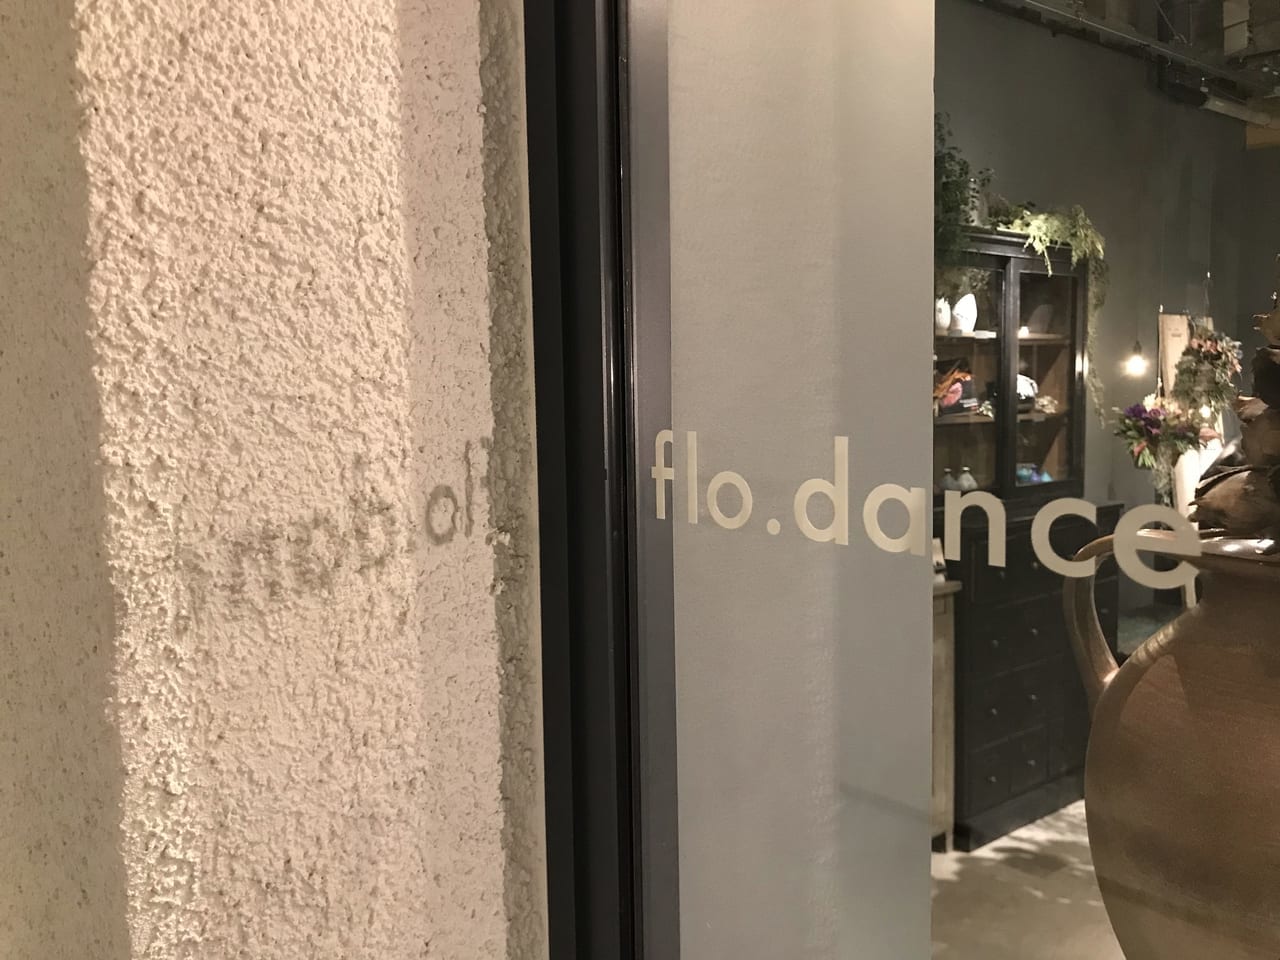 世田谷区下北沢シモキタ線路街reloadリロードにフラワーショップ「flo.dance（フラダンス）」が2021年11月5日にオープンしました。